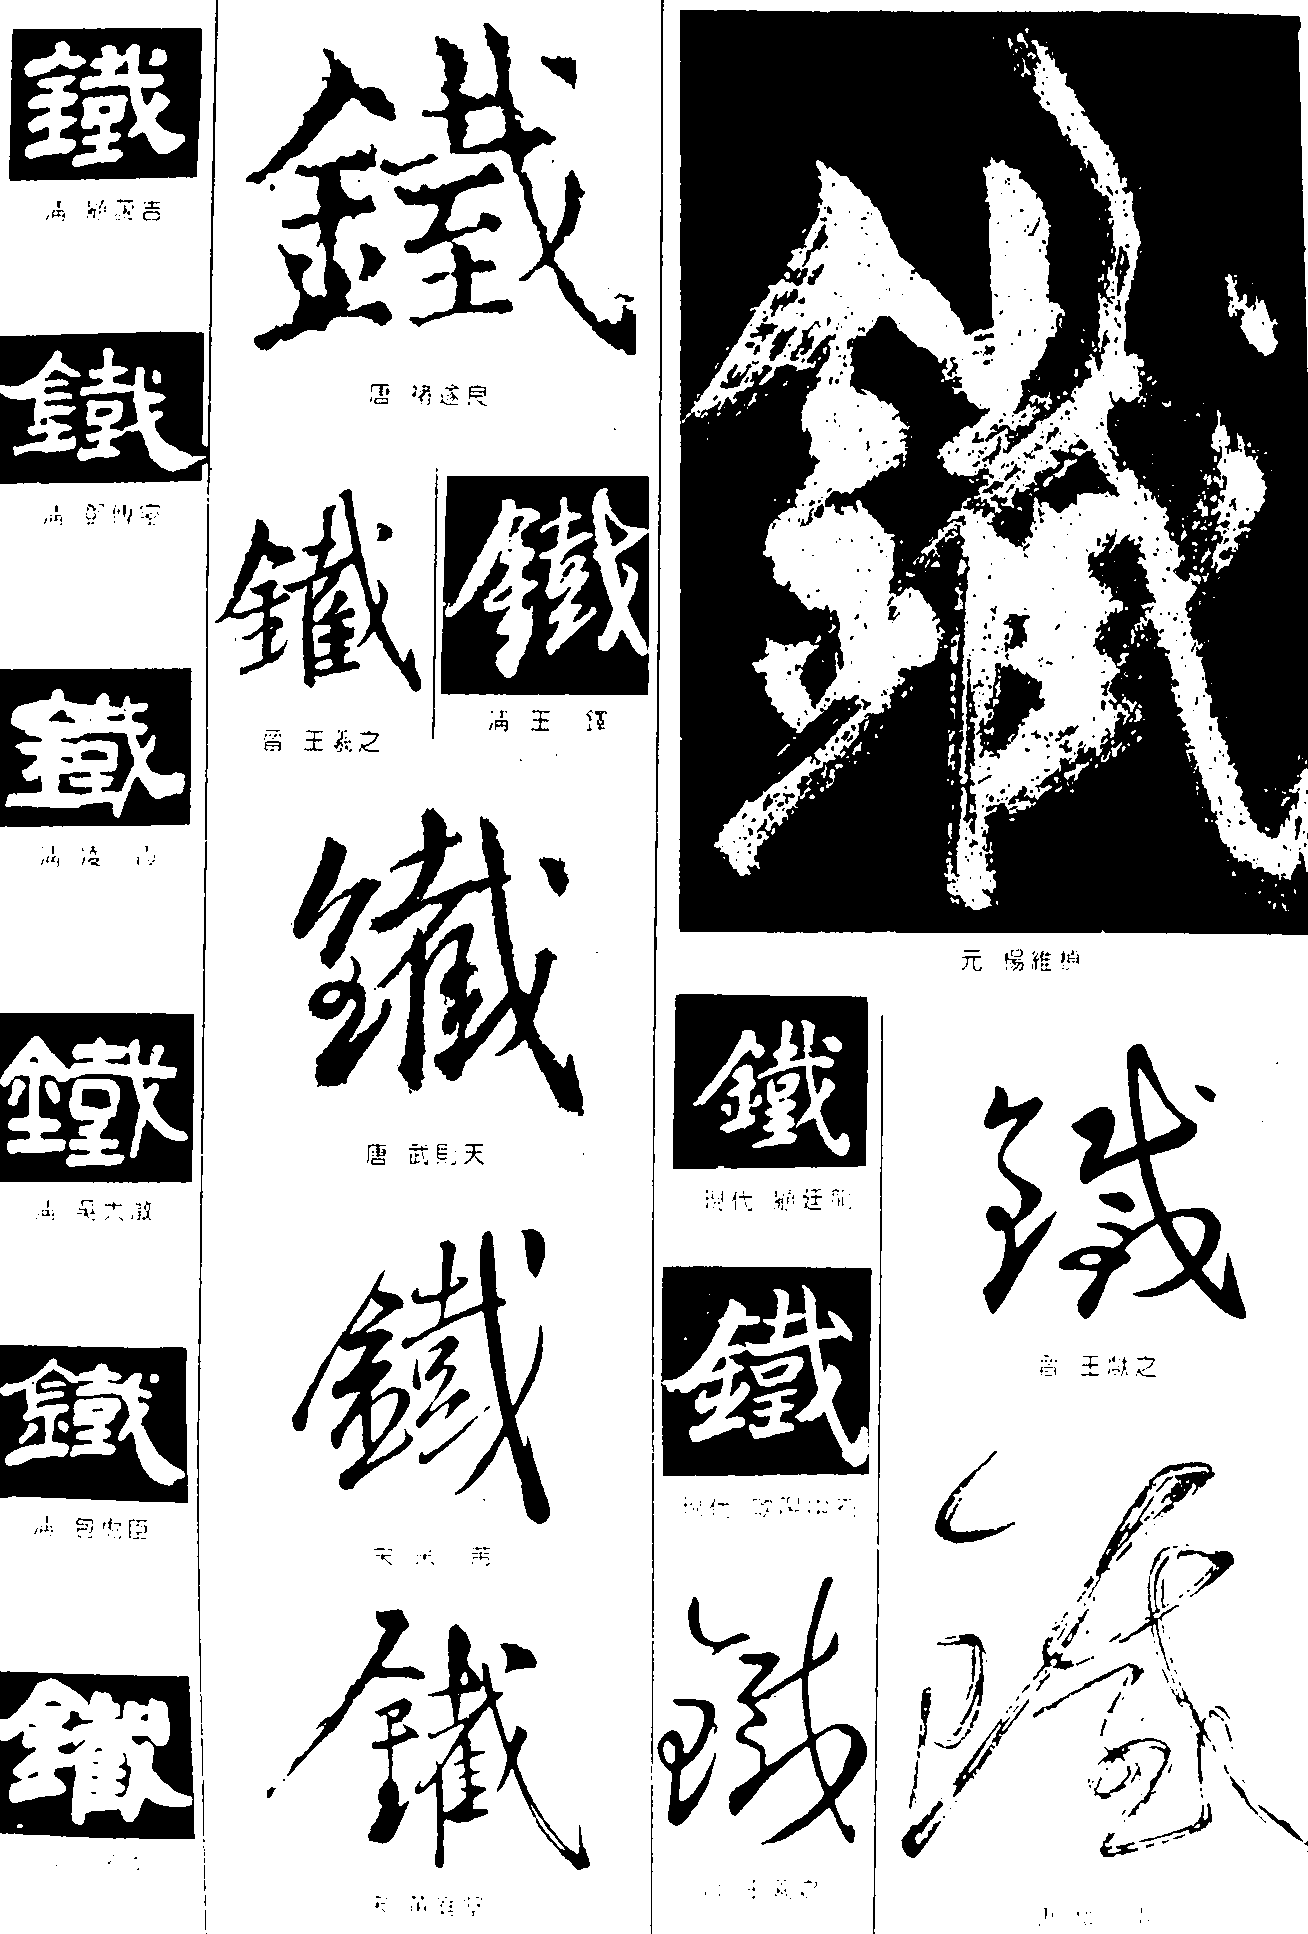 千_书法字体_艺术字体设计